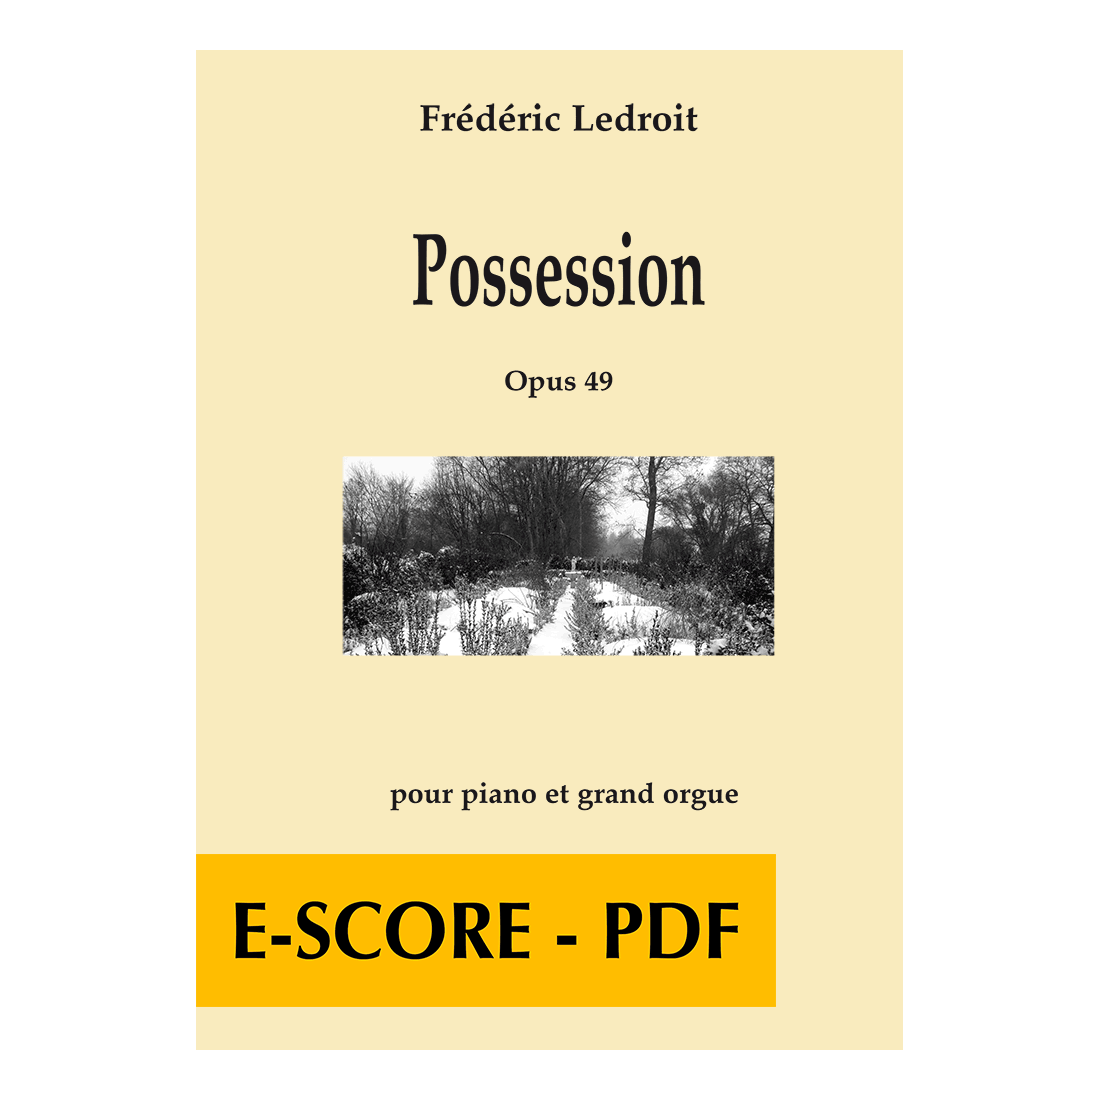 Possession für Klavier und Orgel - E-score PDF